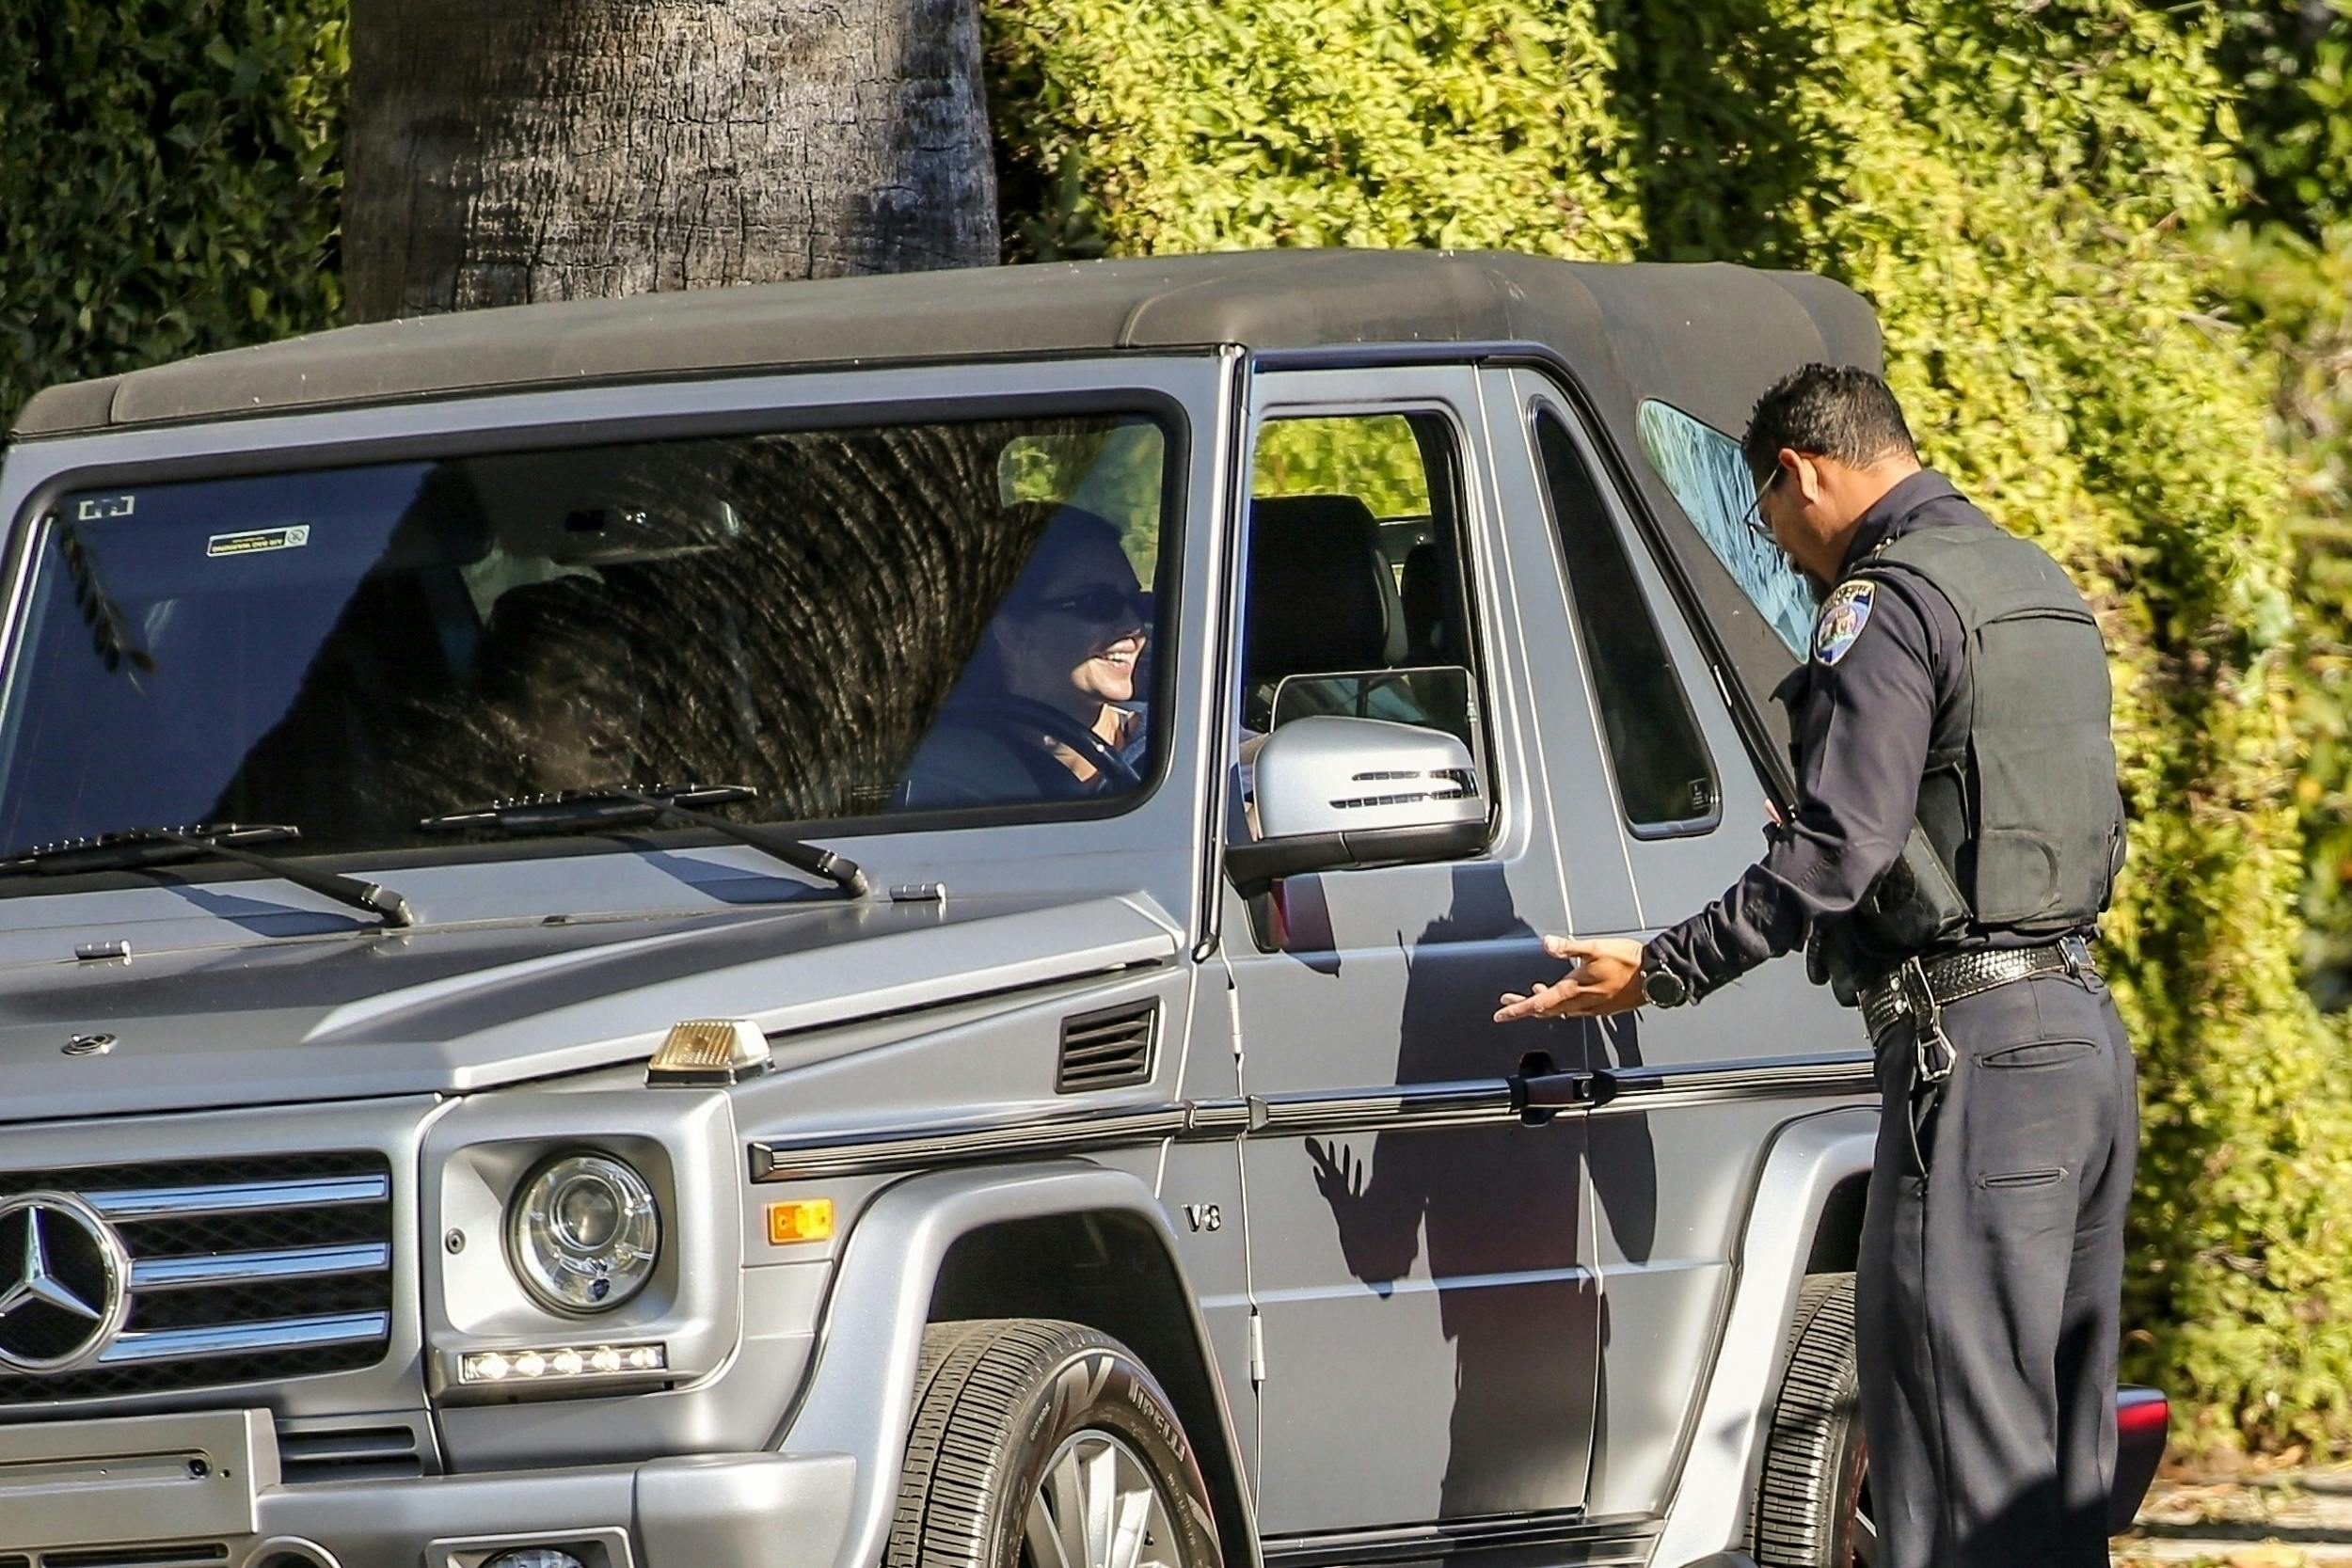 Til trods for at Kendall Jenner var blevet stoppet af politiet og fik en bøde, formåede hun at smile til betjenten. 